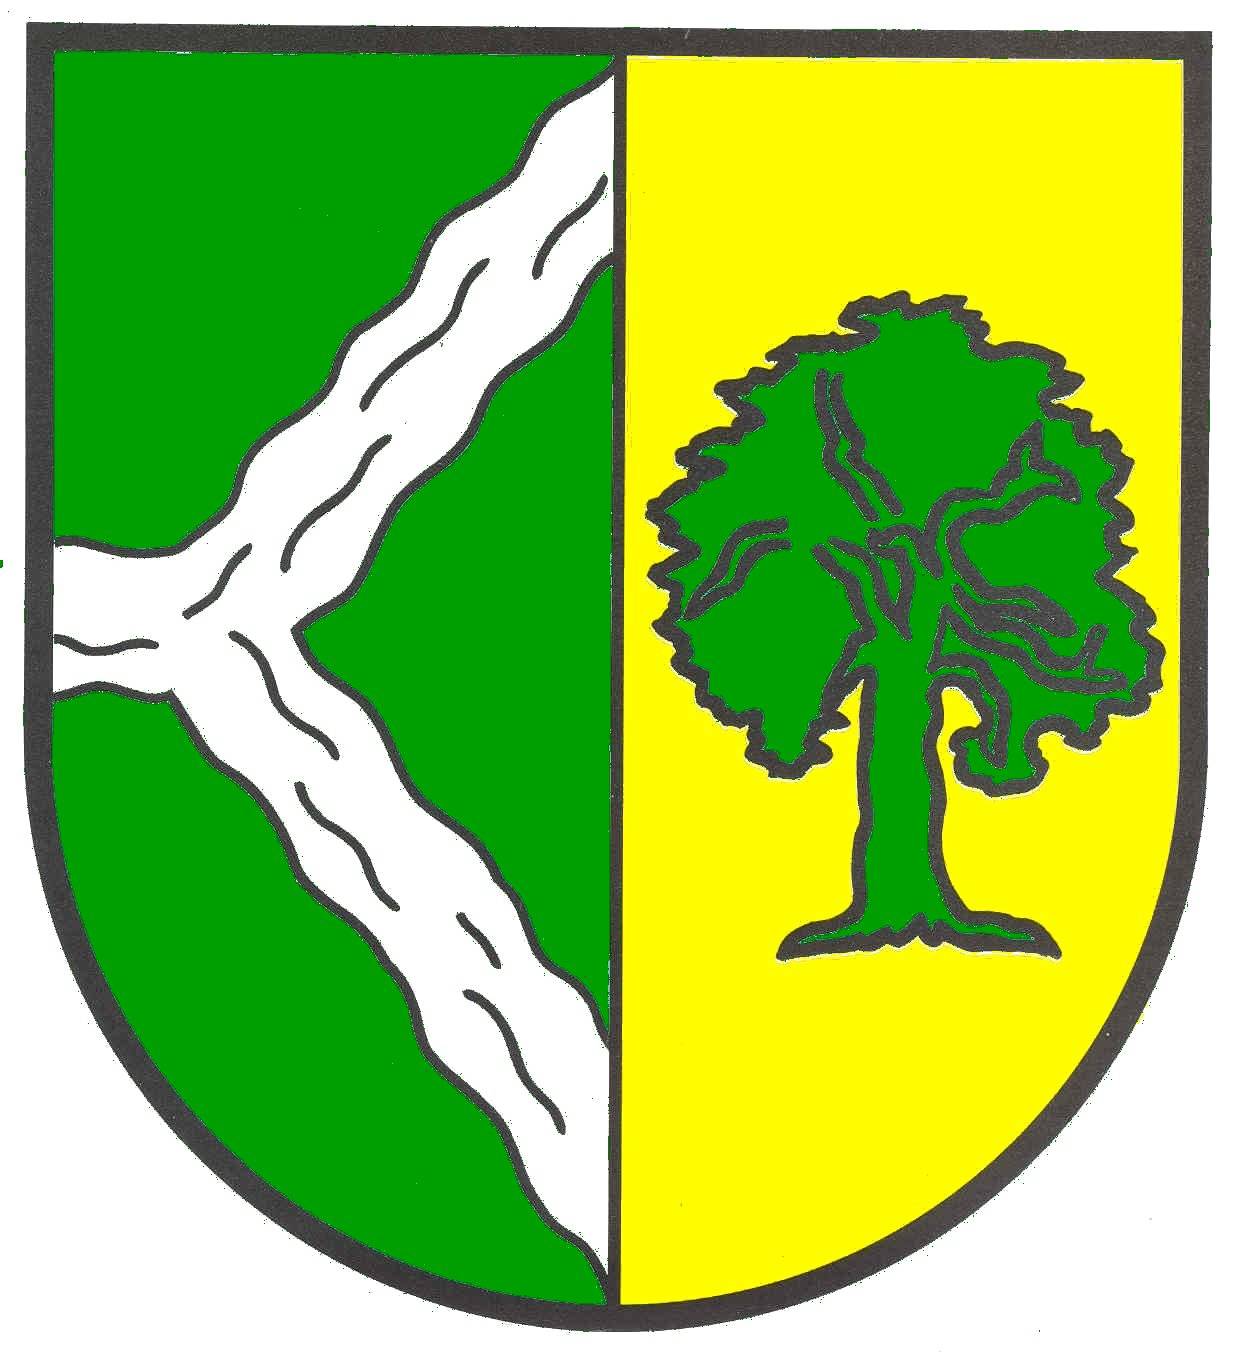 Wappen Gemeinde Bohmstedt, Kreis Nordfriesland